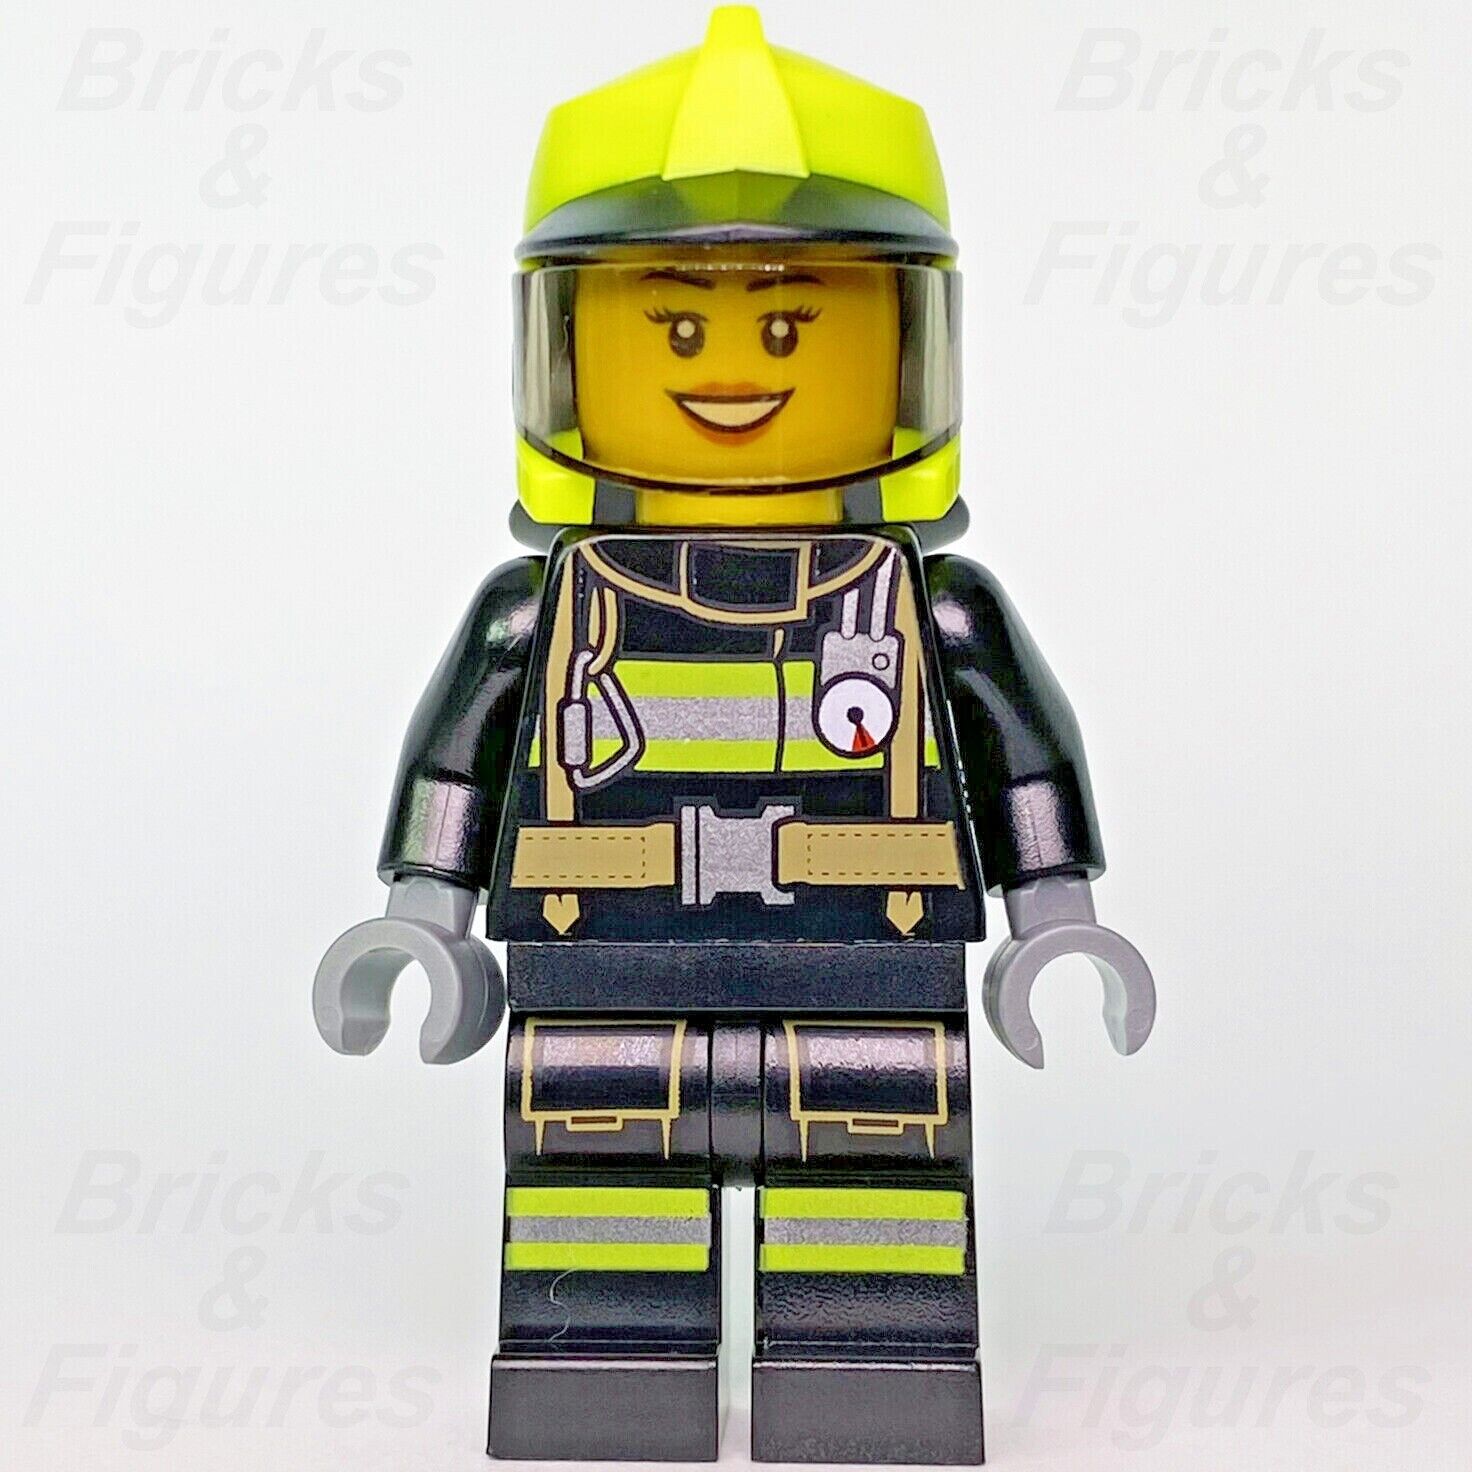 タウンシティ レゴ 消防士 消防士 消防士 ミニフィギュア 60321 cty1357 消防士